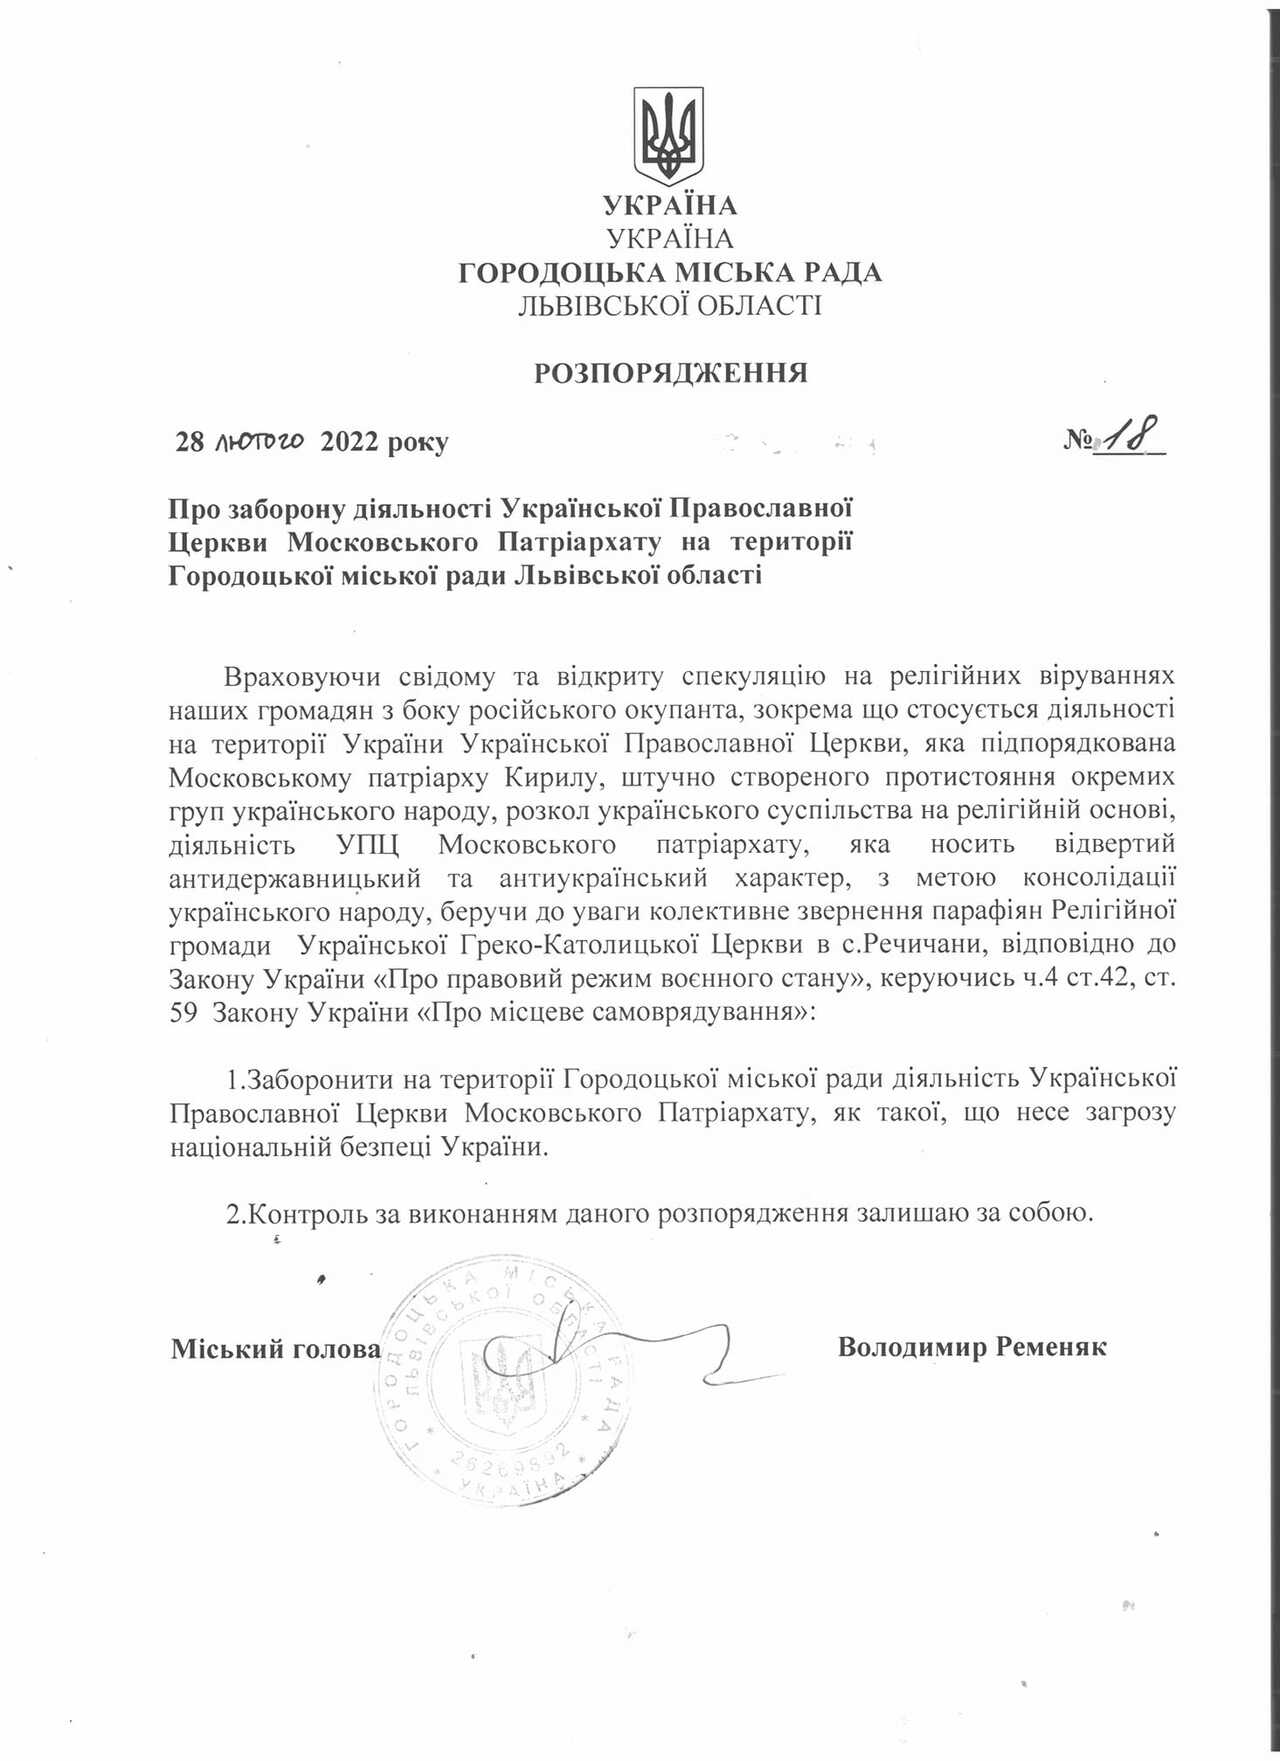 В одном из городов Львовской области власти запретили деятельность УПЦ МП_1